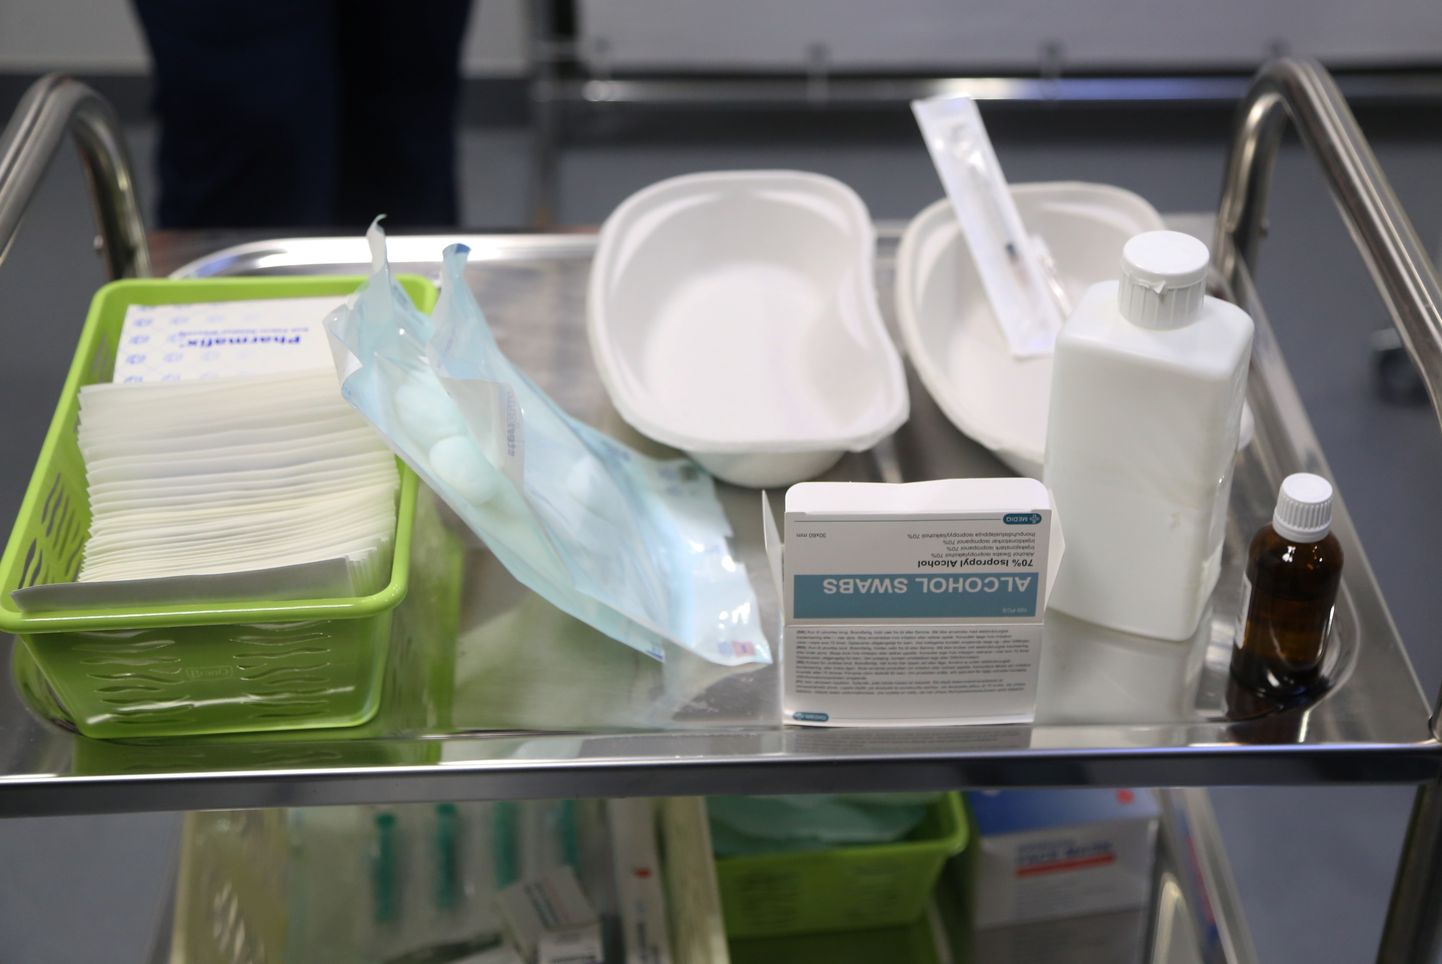 Rīgas Austrumu klīniskās universitātes slimnīcas stacionārā "Gaiļezers" tiek uzsākta farmācijas uzņēmumu "Pfizer" un "BioNTech" ražotās vakcīnas pret Covid-19 injicēšana.